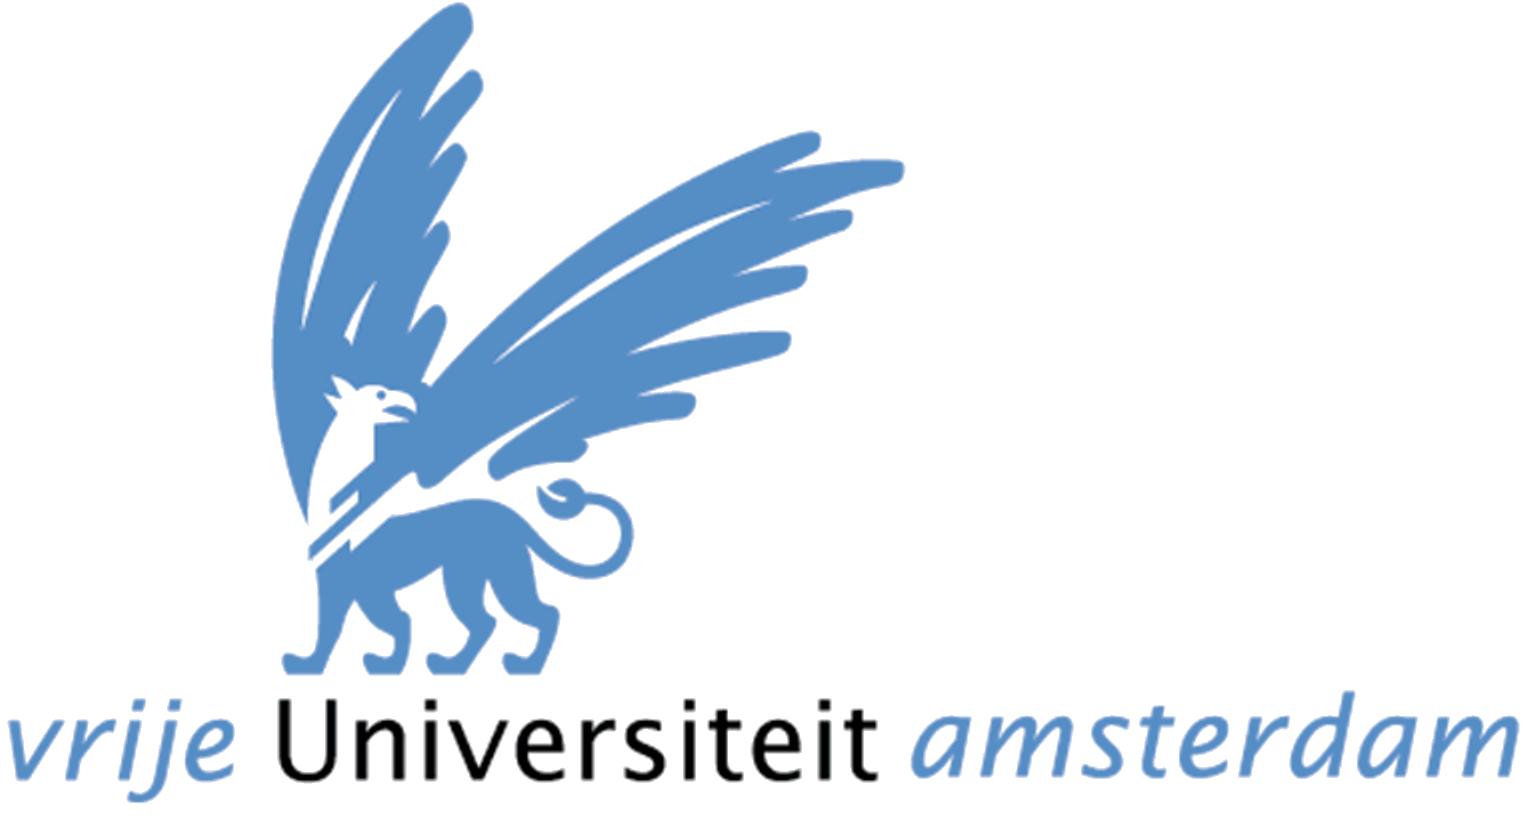 vrije universiteit amsterdam logo 01